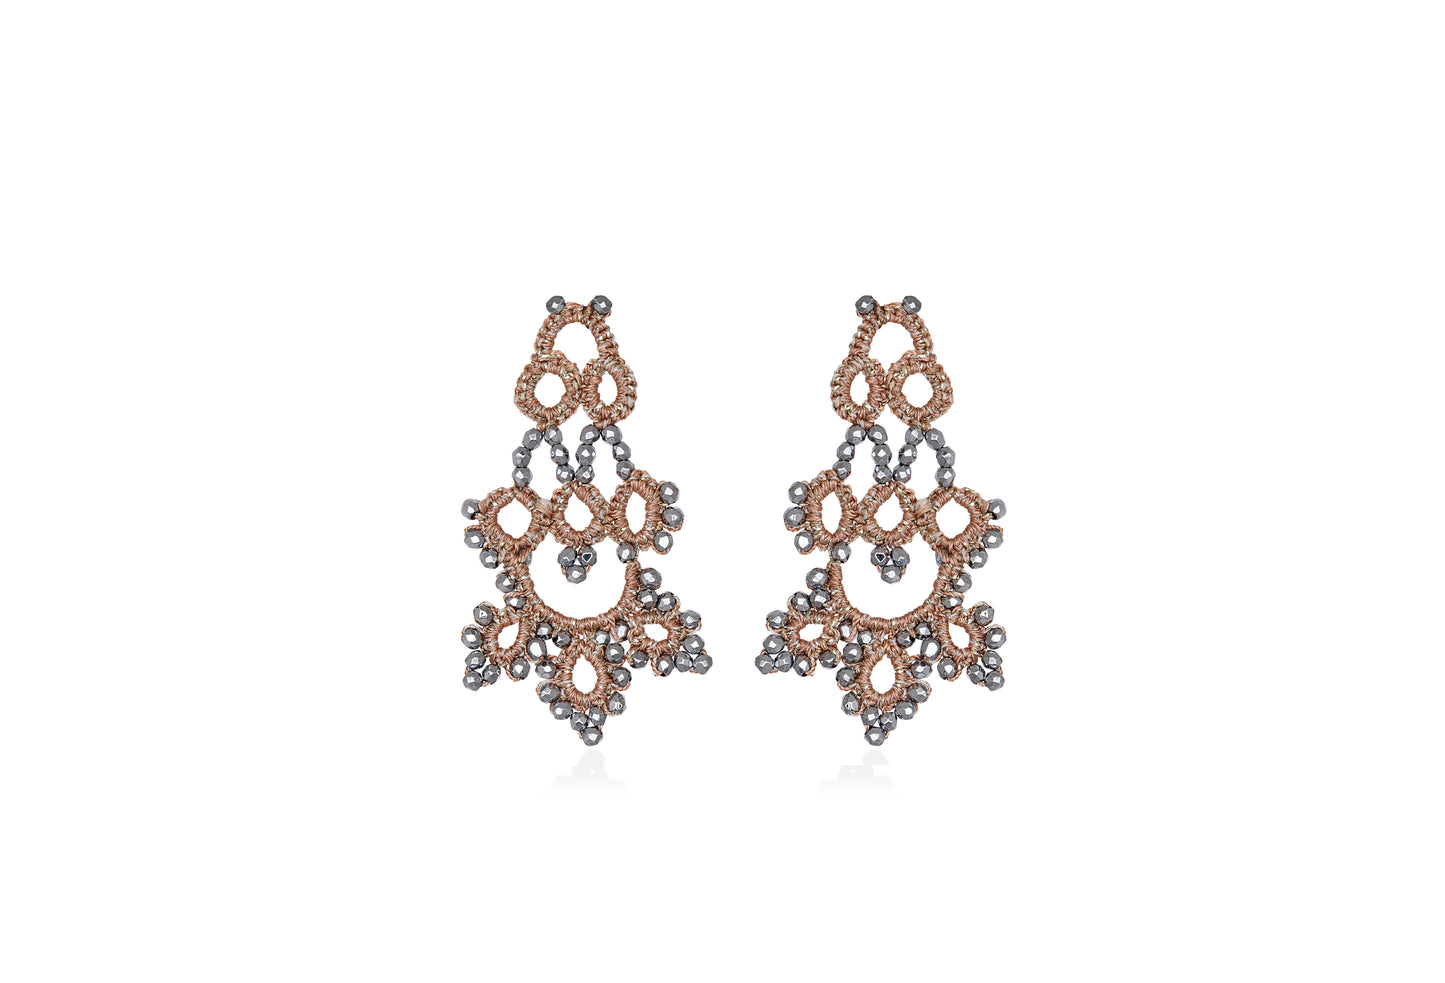 Bijoux lace earrings, rose gold dark grey